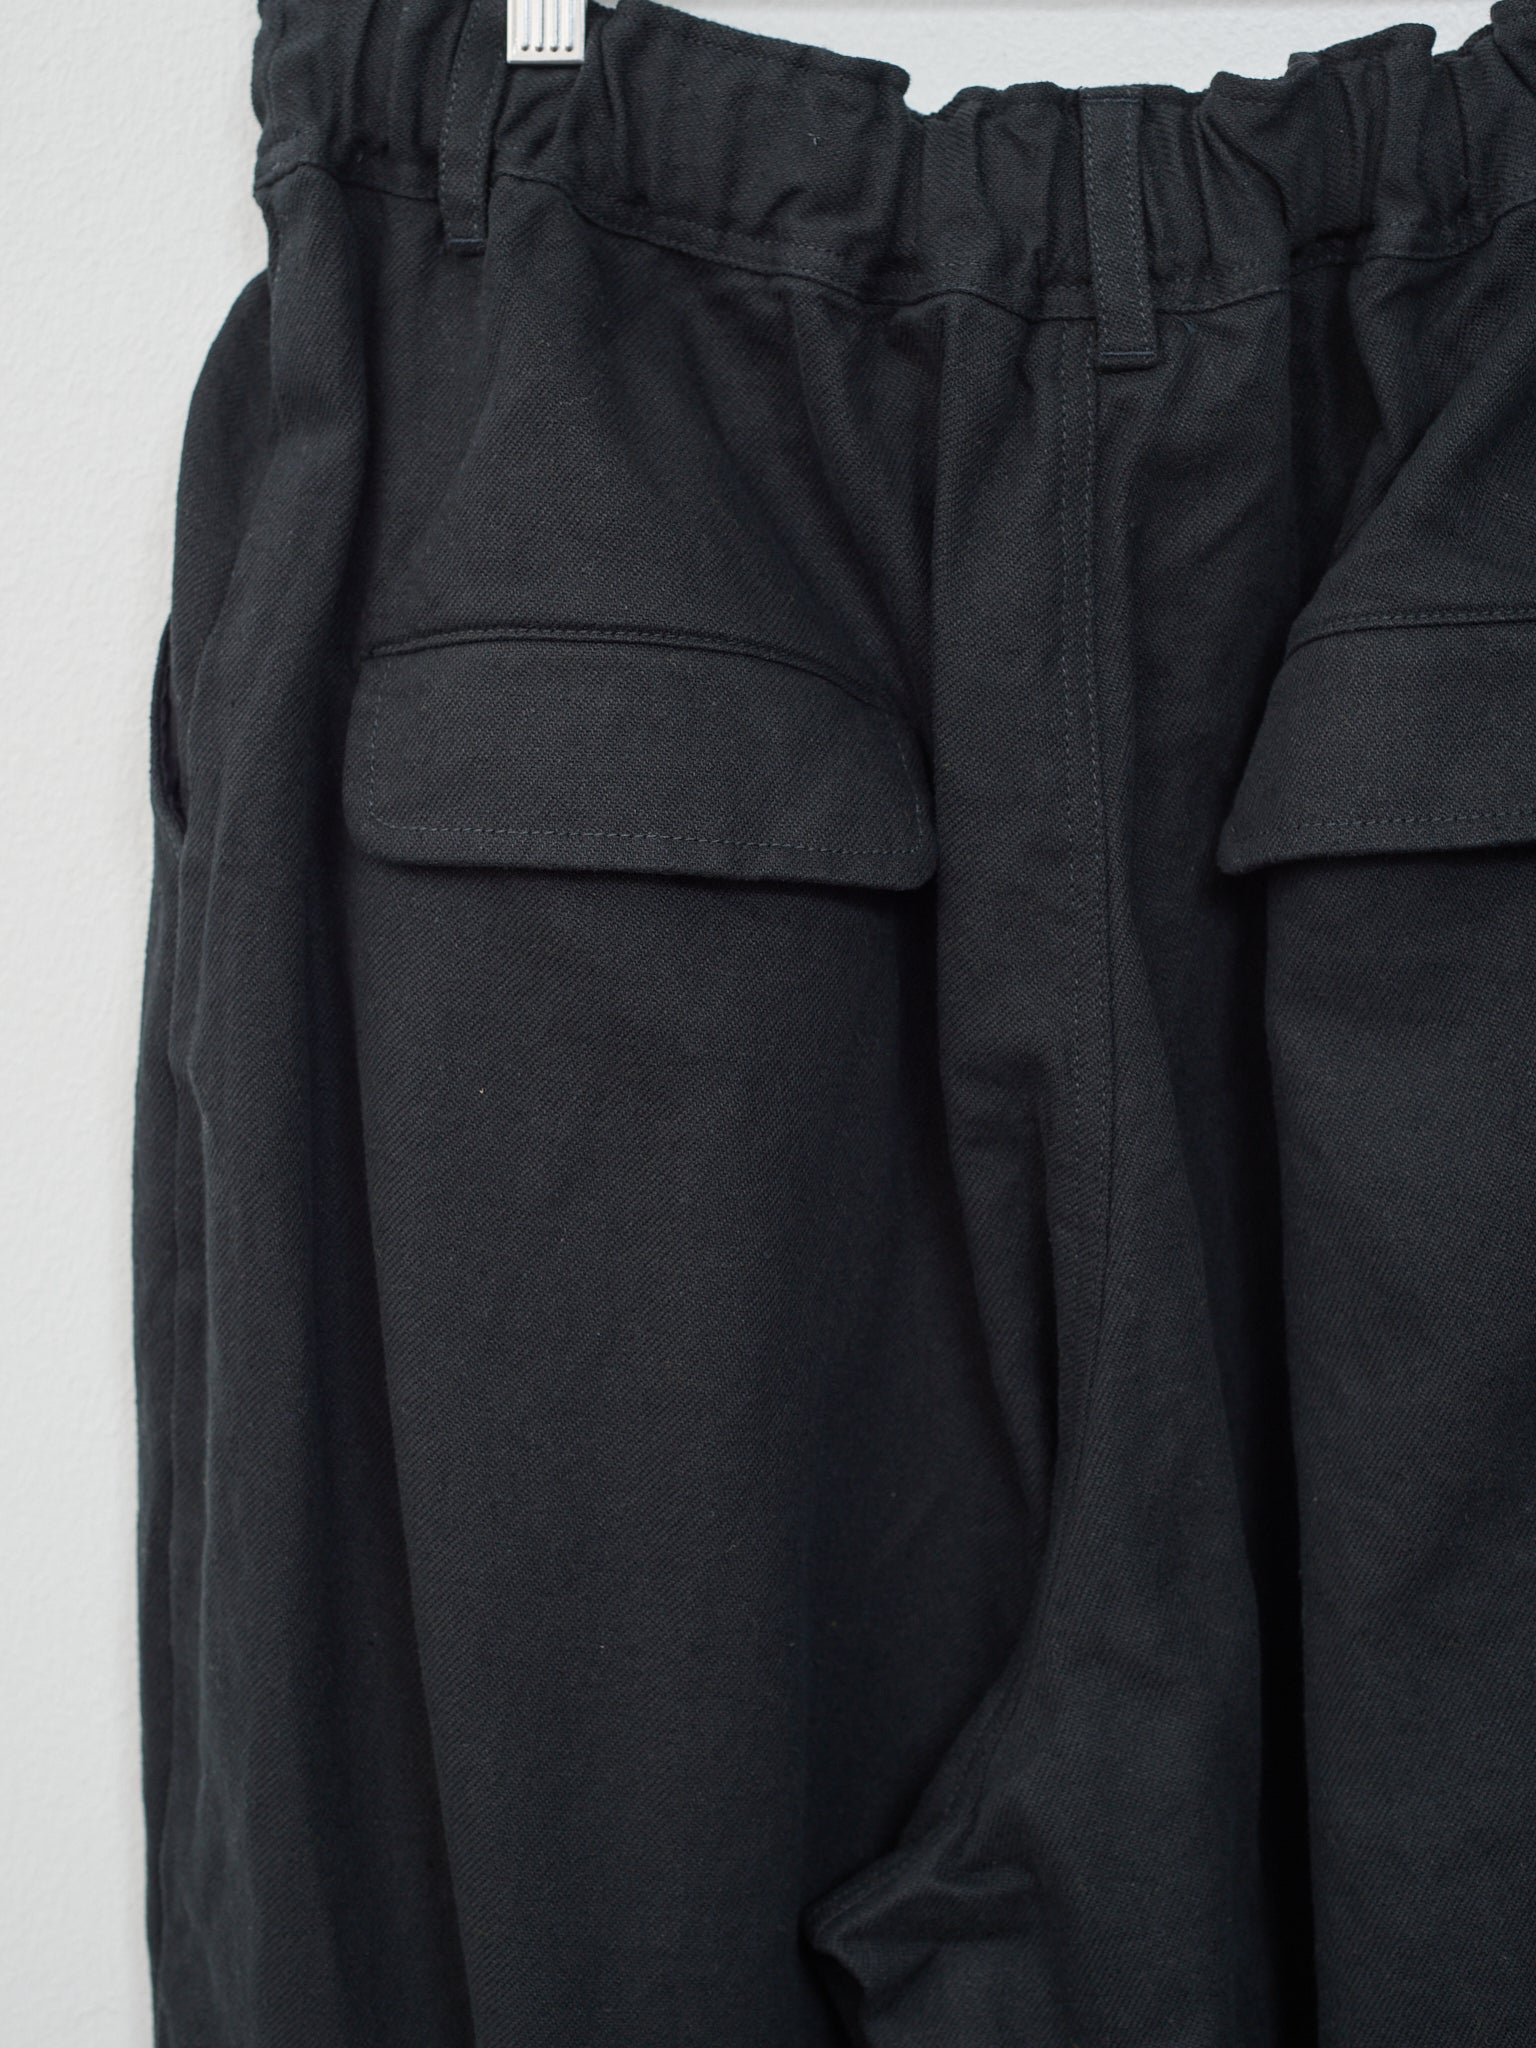 Namu Shop - Ichi Cotton Linen Pants - Black